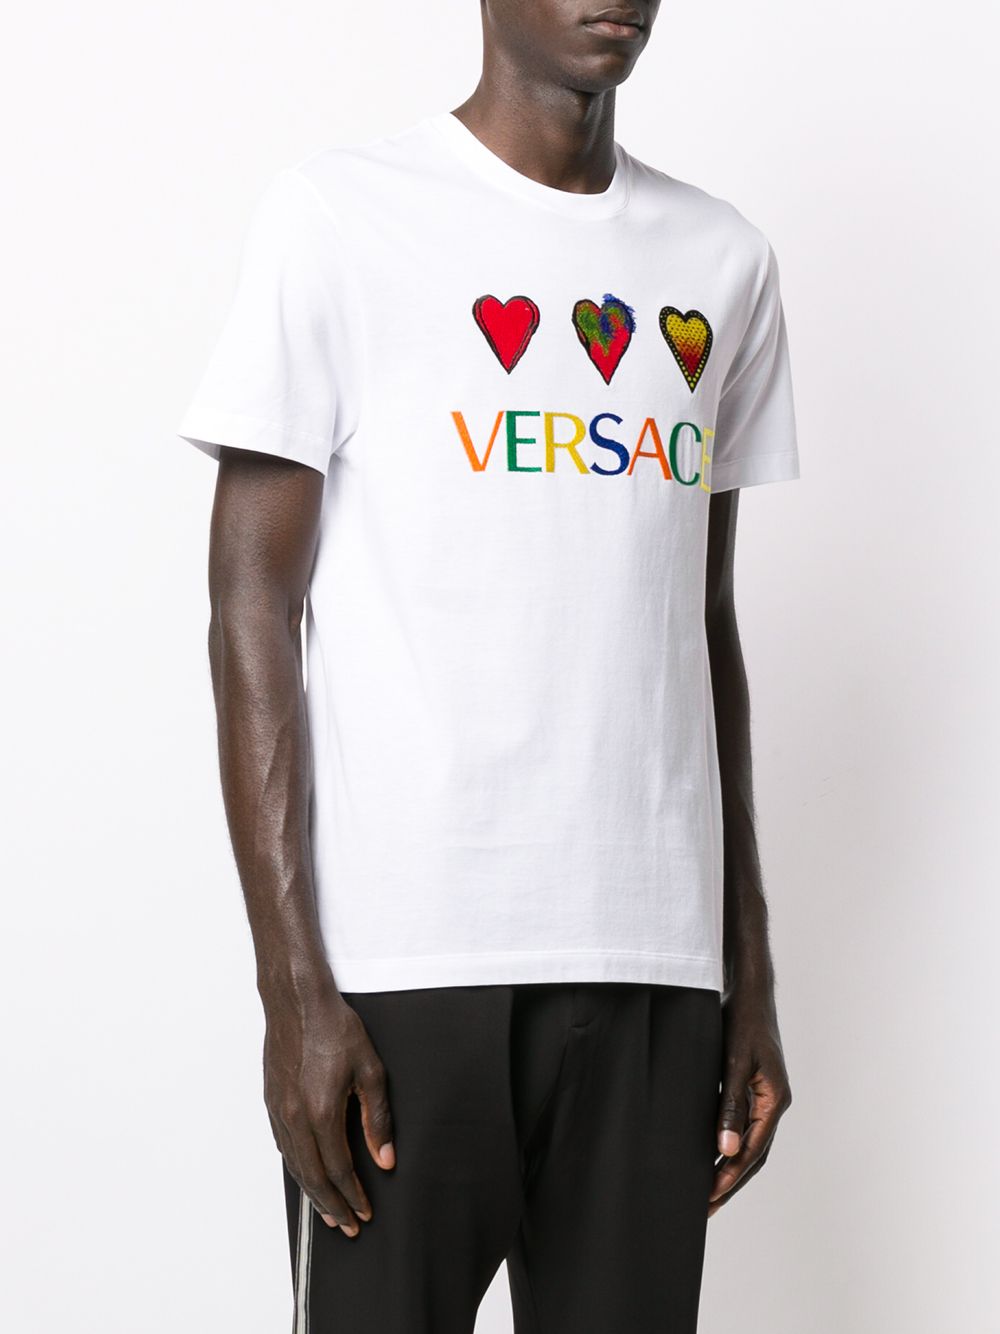 фото Versace футболка с вышитым логотипом